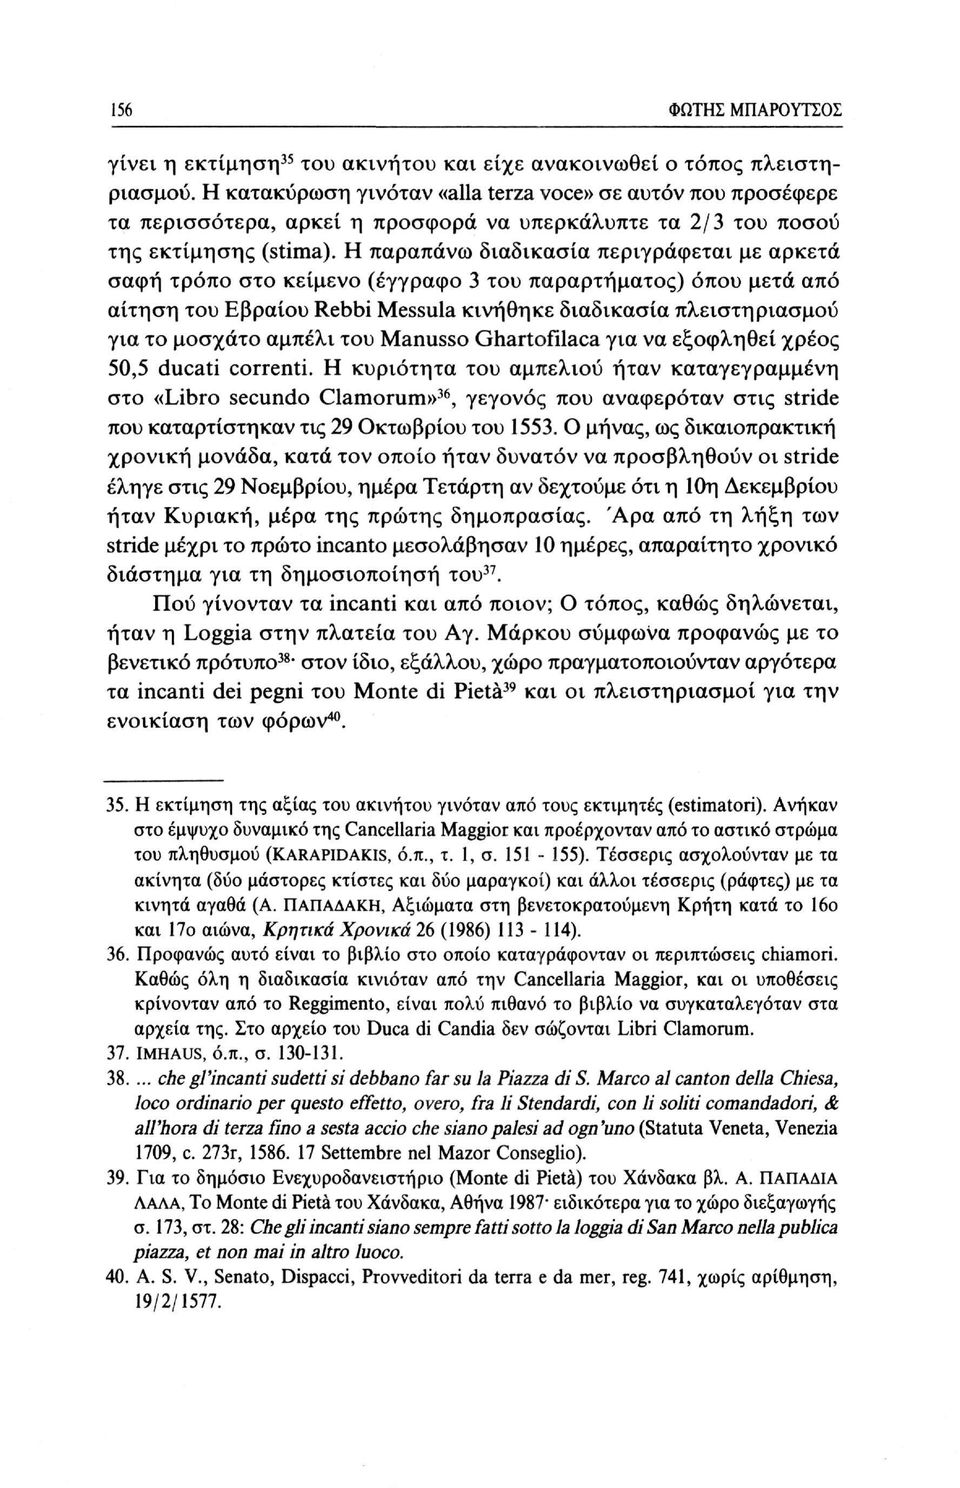 Η παραπάνω διαδικασία περιγράφεται με αρκετά σαφή τρόπο στο κείμενο (έγγραφο 3 του παραρτήματος) όπου μετά από αίτηση του Εβραίου Rebbi Messula κινήθηκε διαδικασία πλειστηριασμού για το μοσχάτο